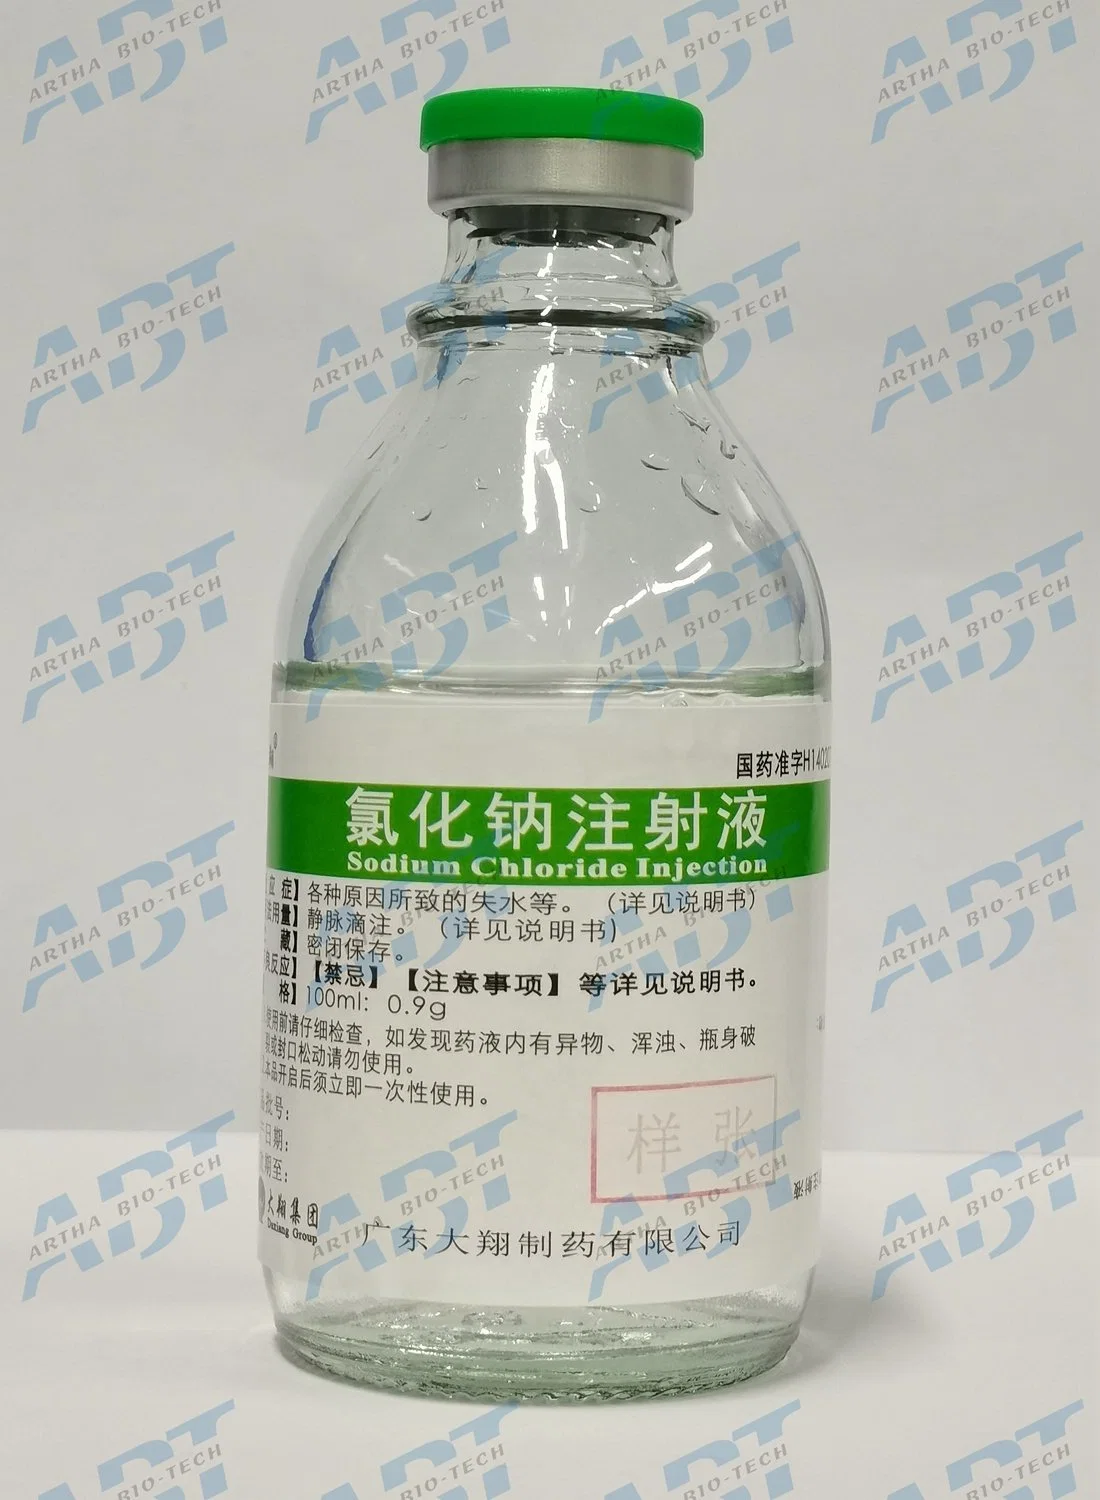 Injection de chlorure de sodium 0,9 g/100 ml par voie intraveineuse dans le domaine médical et de la santé/autres médicaments/produits médicaux/médicaments/pharmaceutiques/infusion.